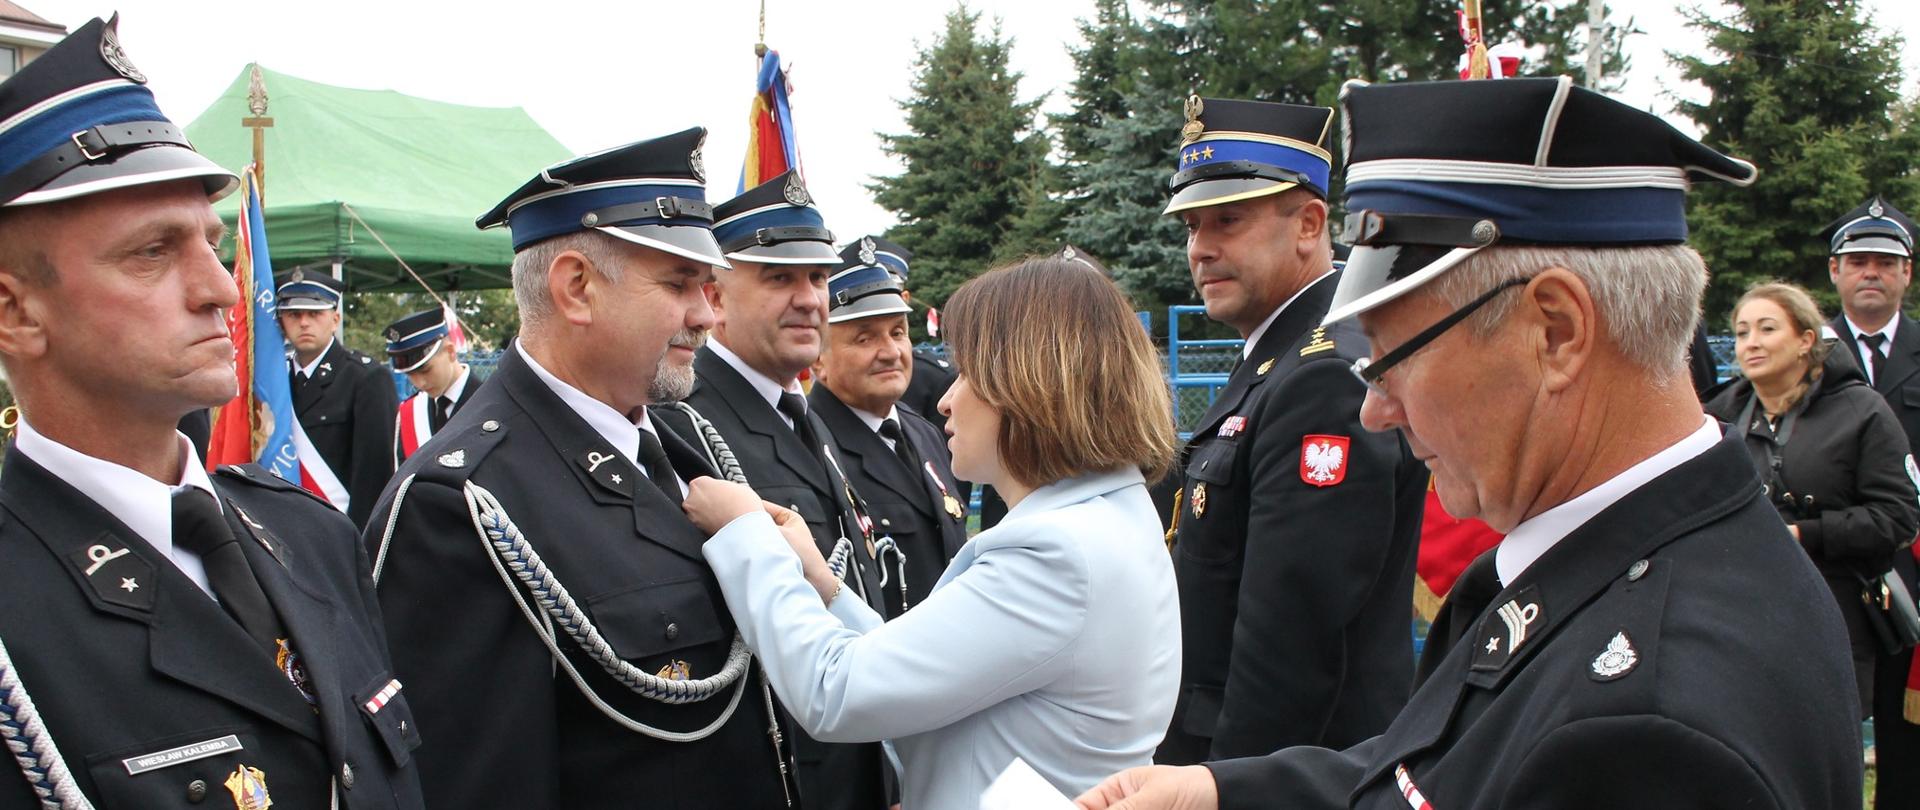 Zdjęcie przedstawia moment wręczenia medali druhom OSP przez Poseł na Sejm Annę Schmidt. W tle widoczni są zaproszeni goście, druhowie oraz poczty sztandarowe. Strażacy ubrani są w umundurowanie wyjściowe ze sznurem.